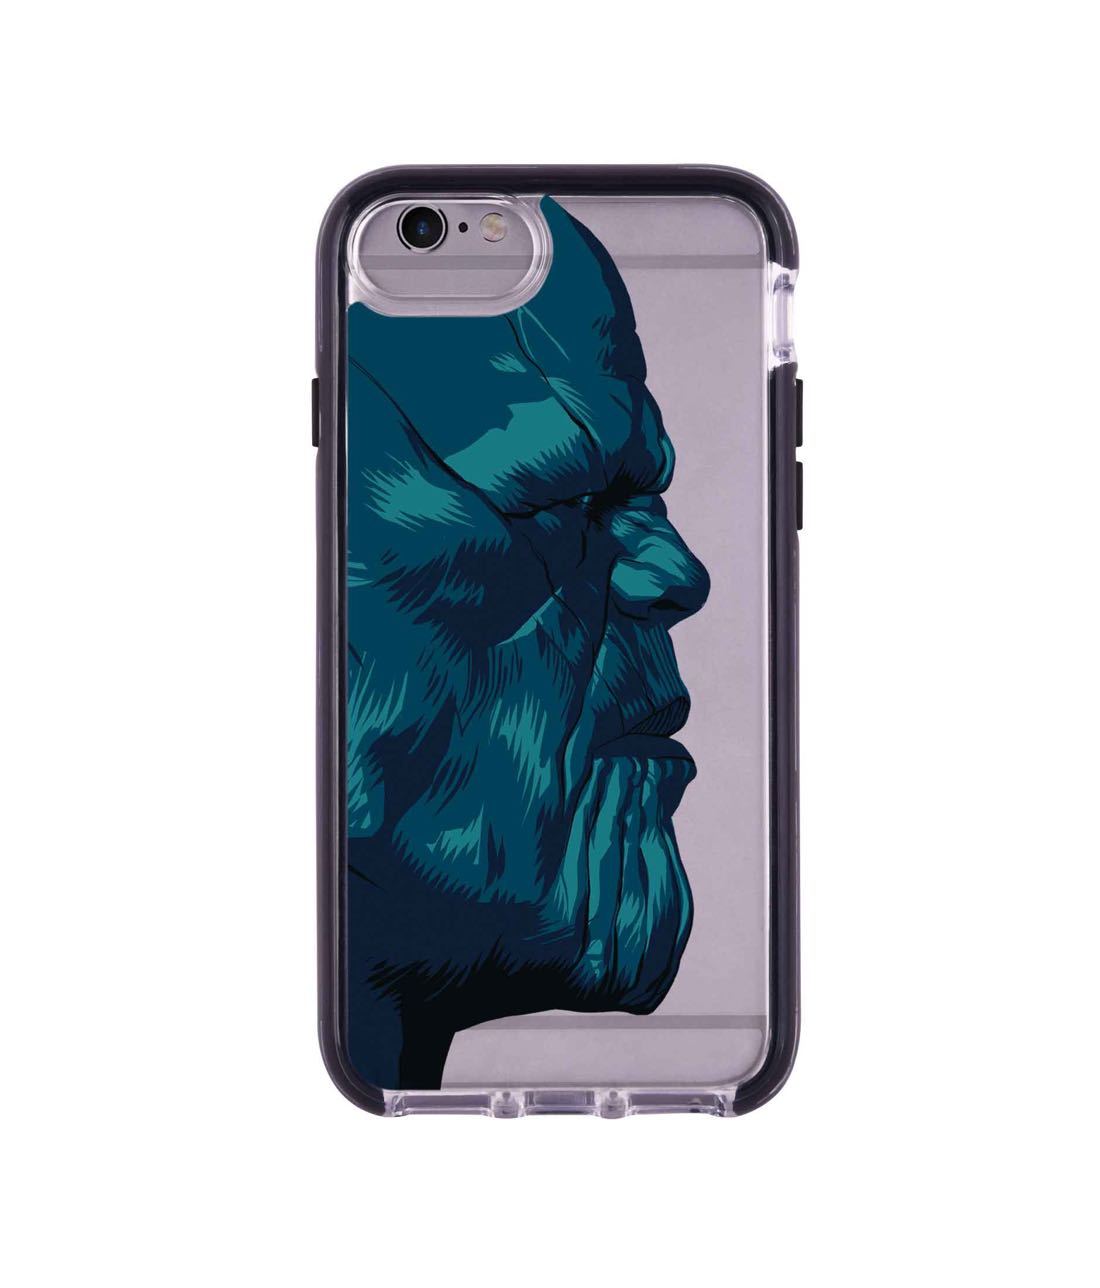 Illuminated Thanos - Extreme Phone Case for iPhone 6 Plus